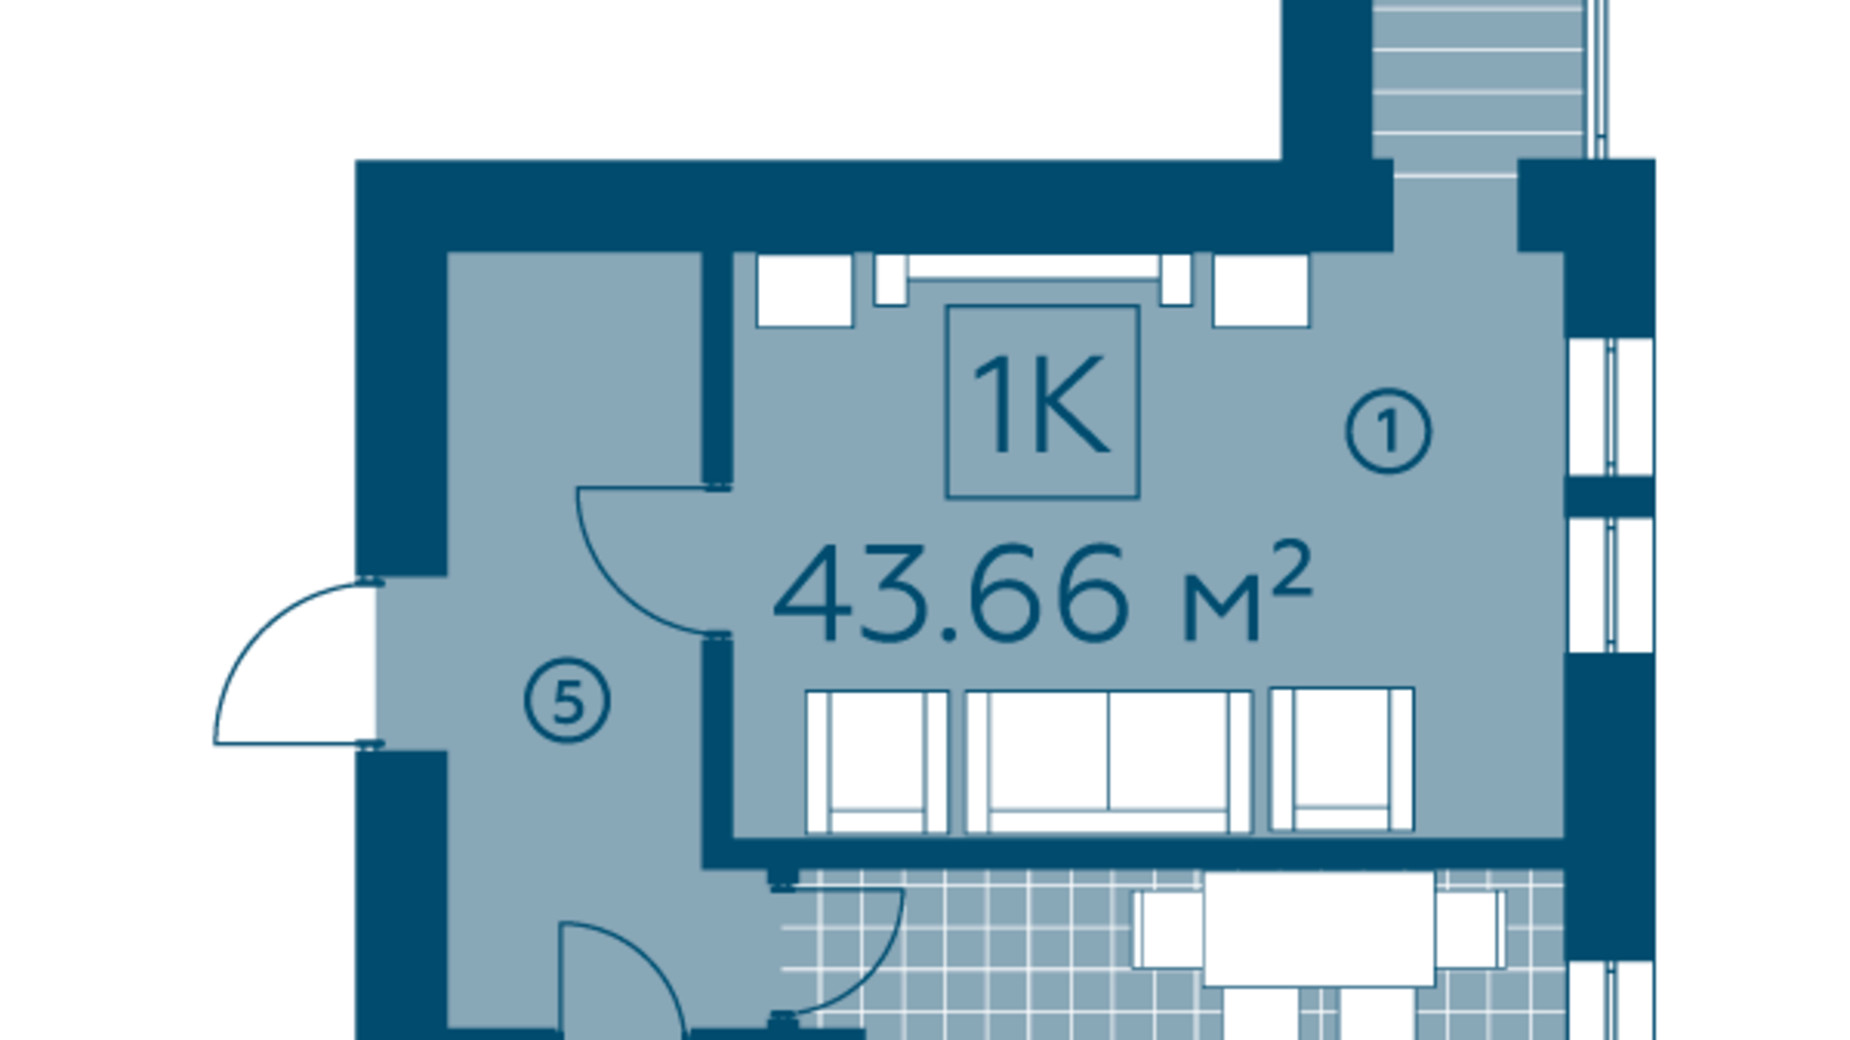 Планування 1-кімнатної квартири в ЖК Київський 43.66 м², фото 325670